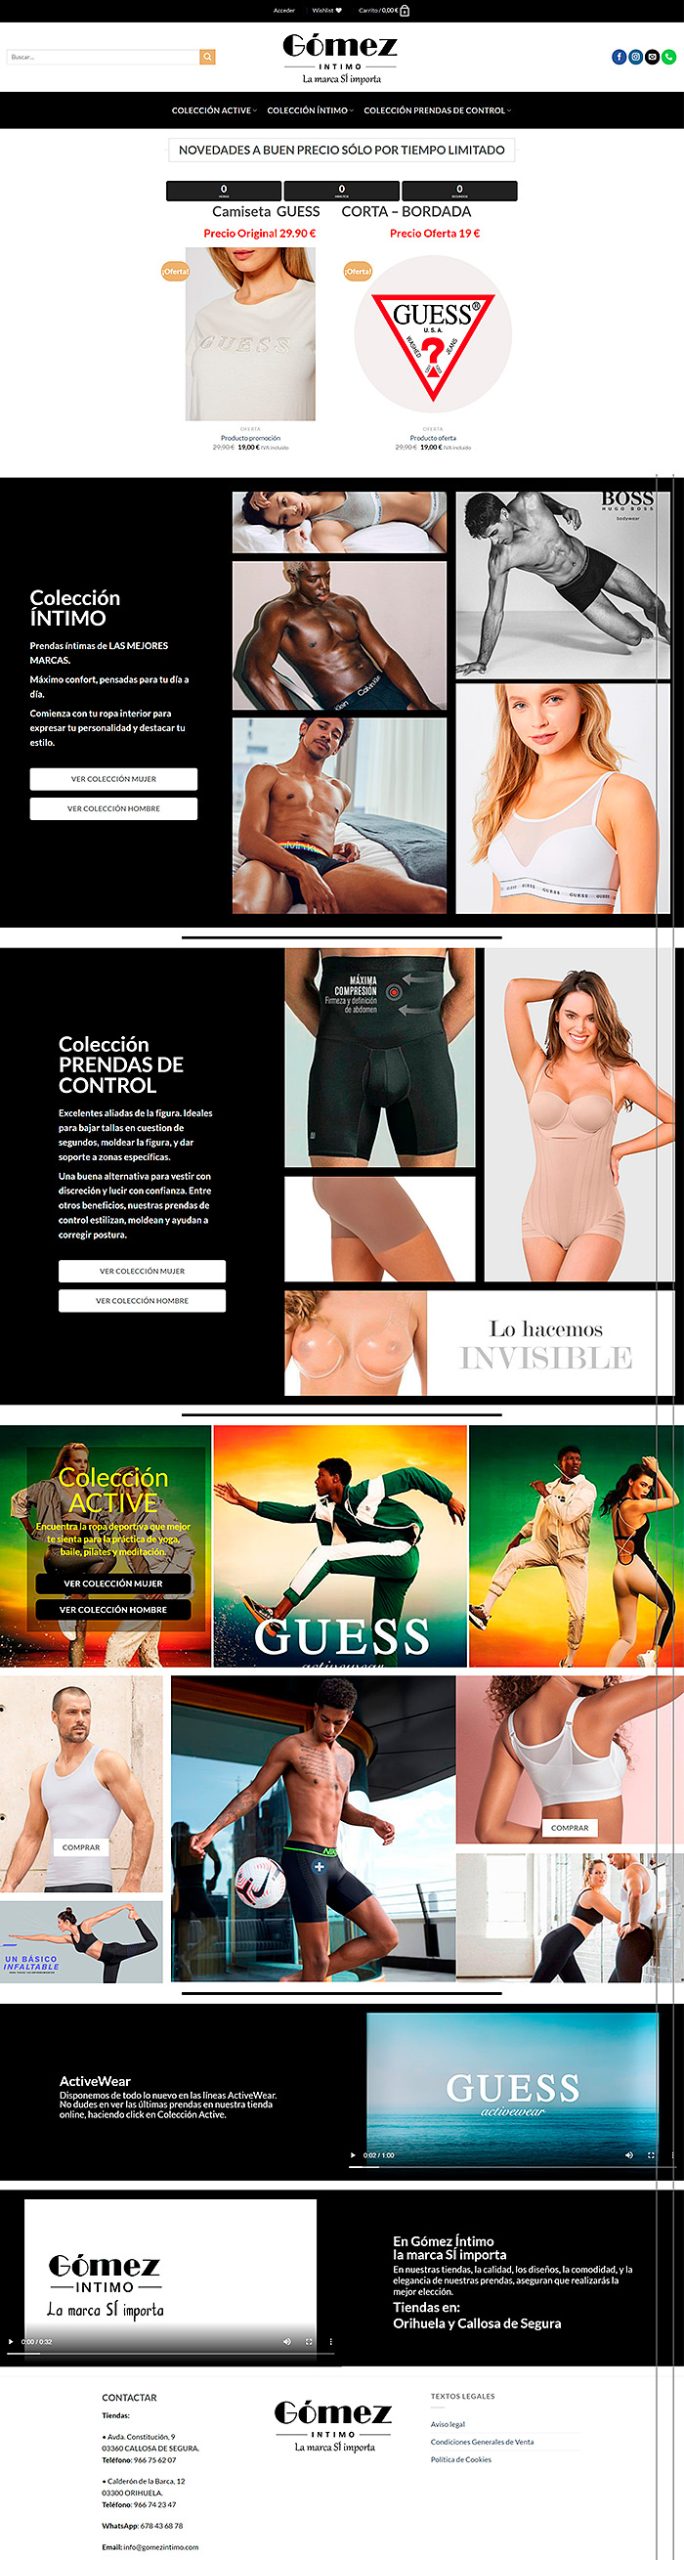 Pagina web Online Gomez Intimo de Moda y moda intima para hombre y mujer. Pagina con detalle